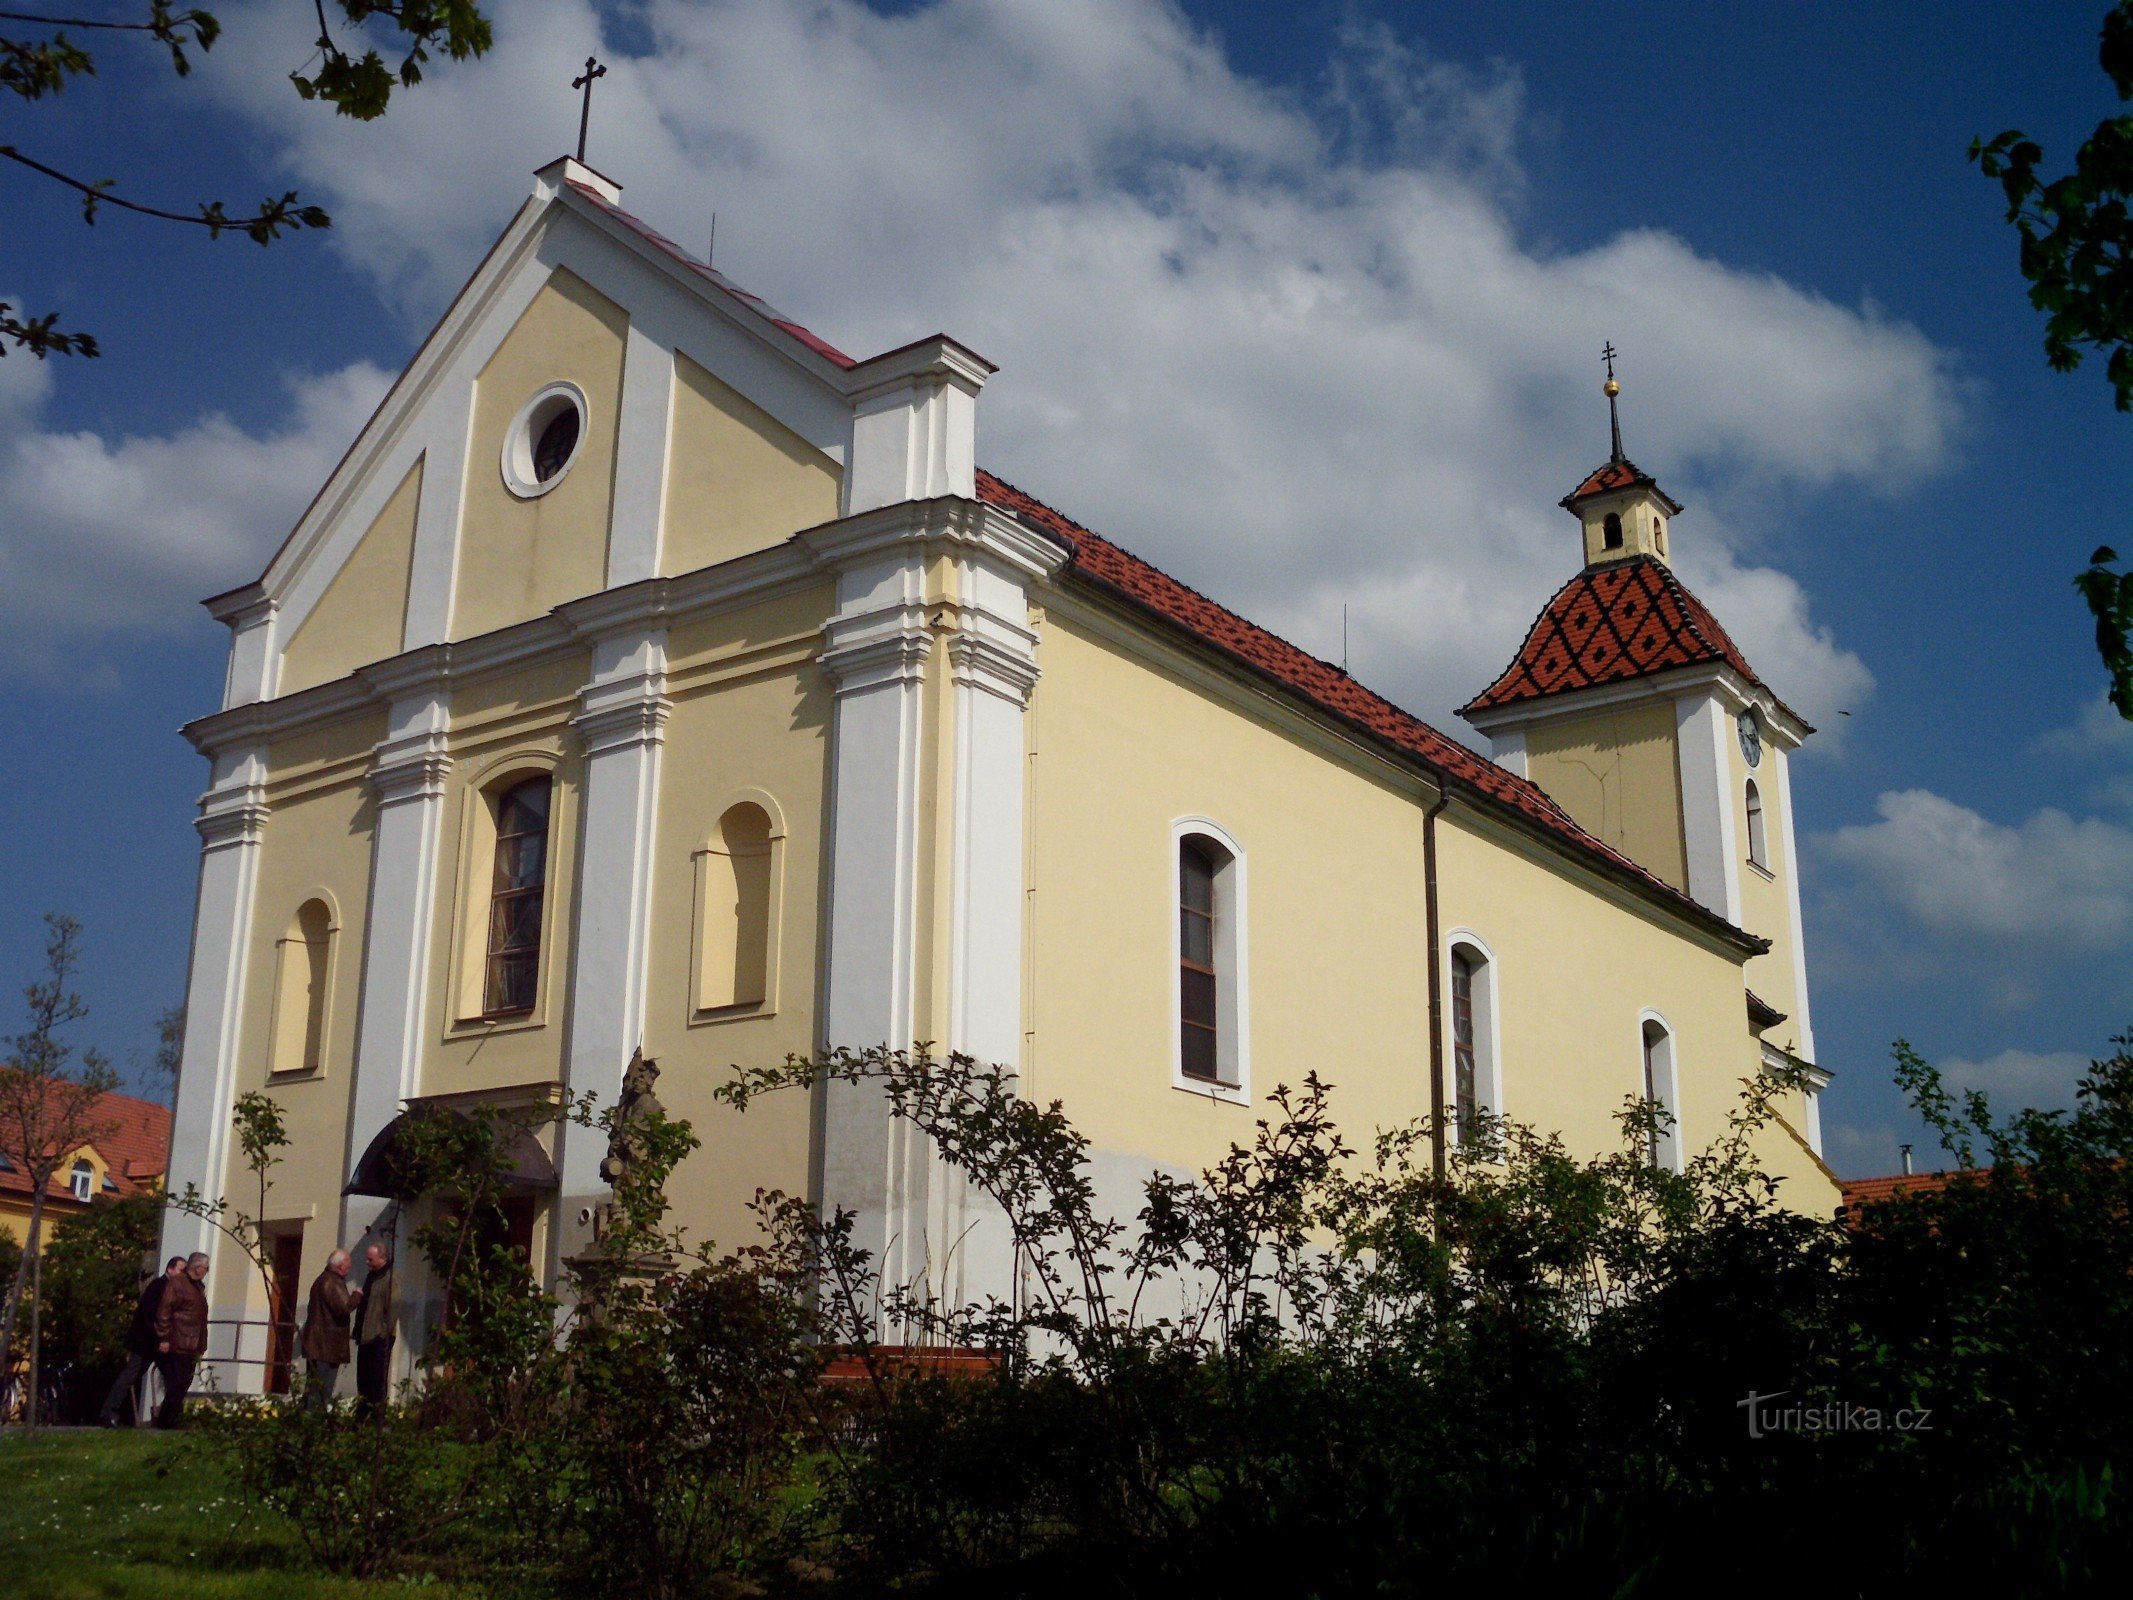 Kunovice (tại U. Hradiště) - nhà thờ St. Phi-e-rơ và Phao-lô